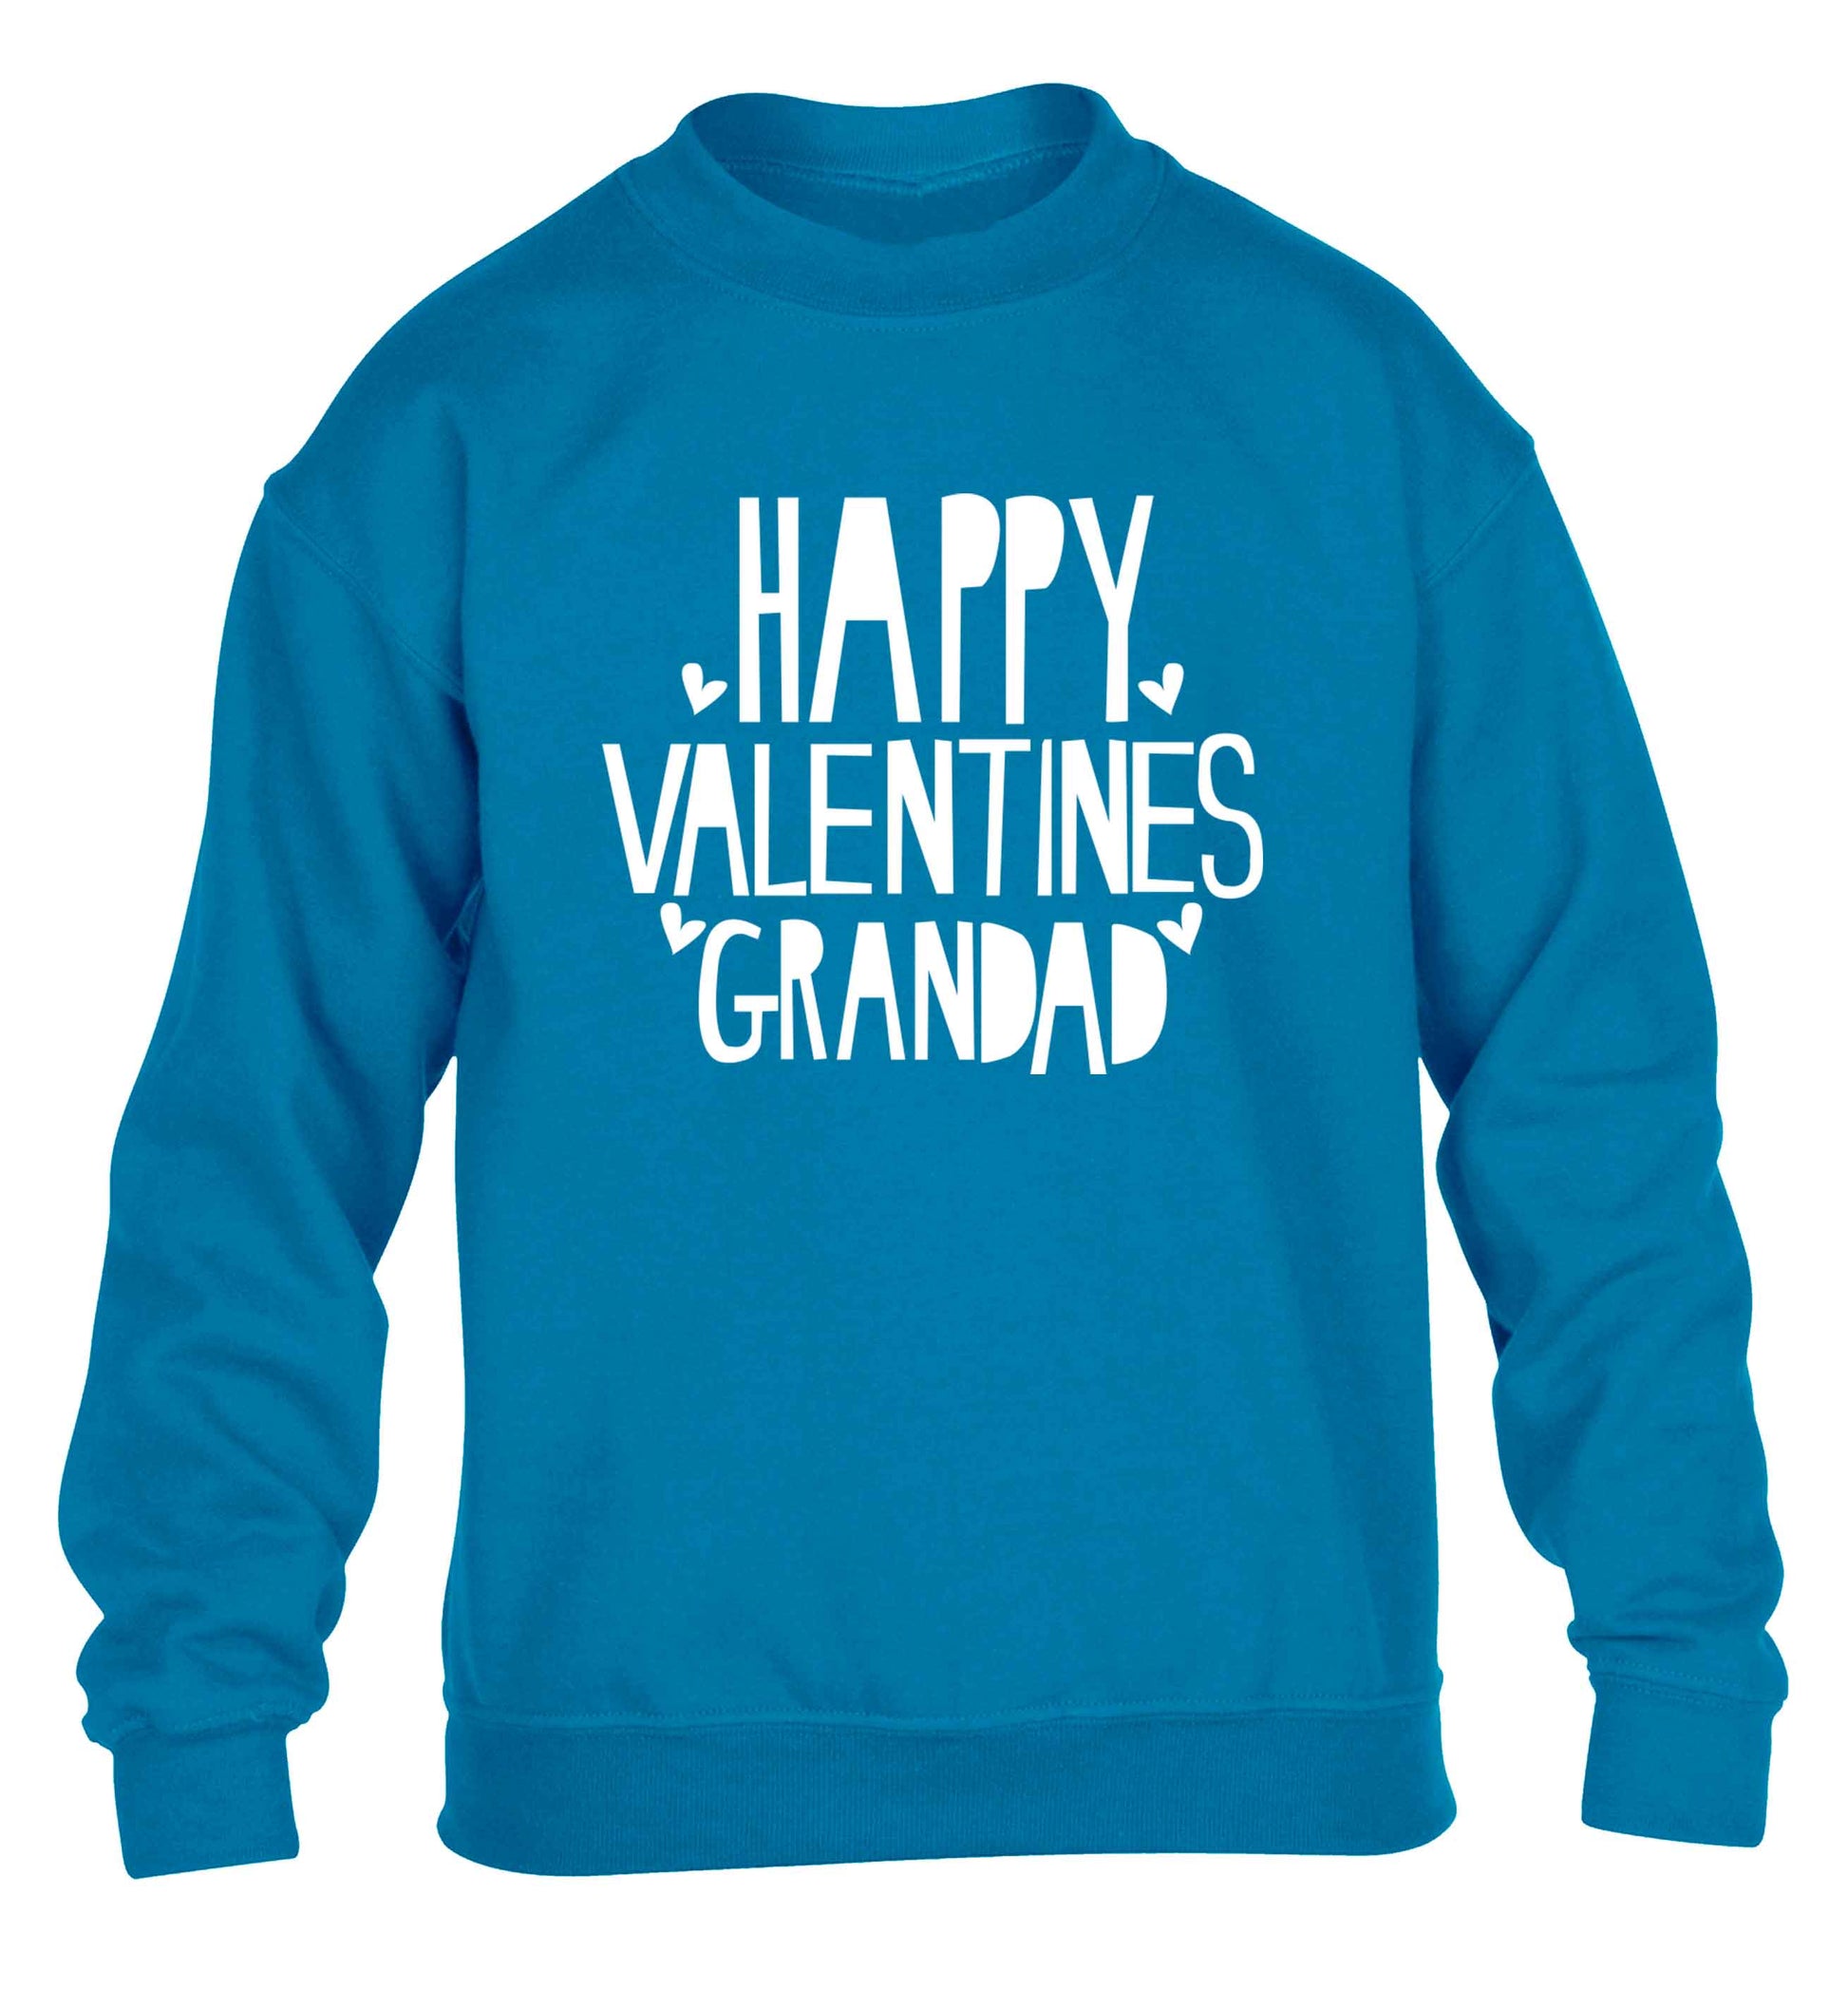 Happy valentines grandad children's blue sweater 12-13 Years